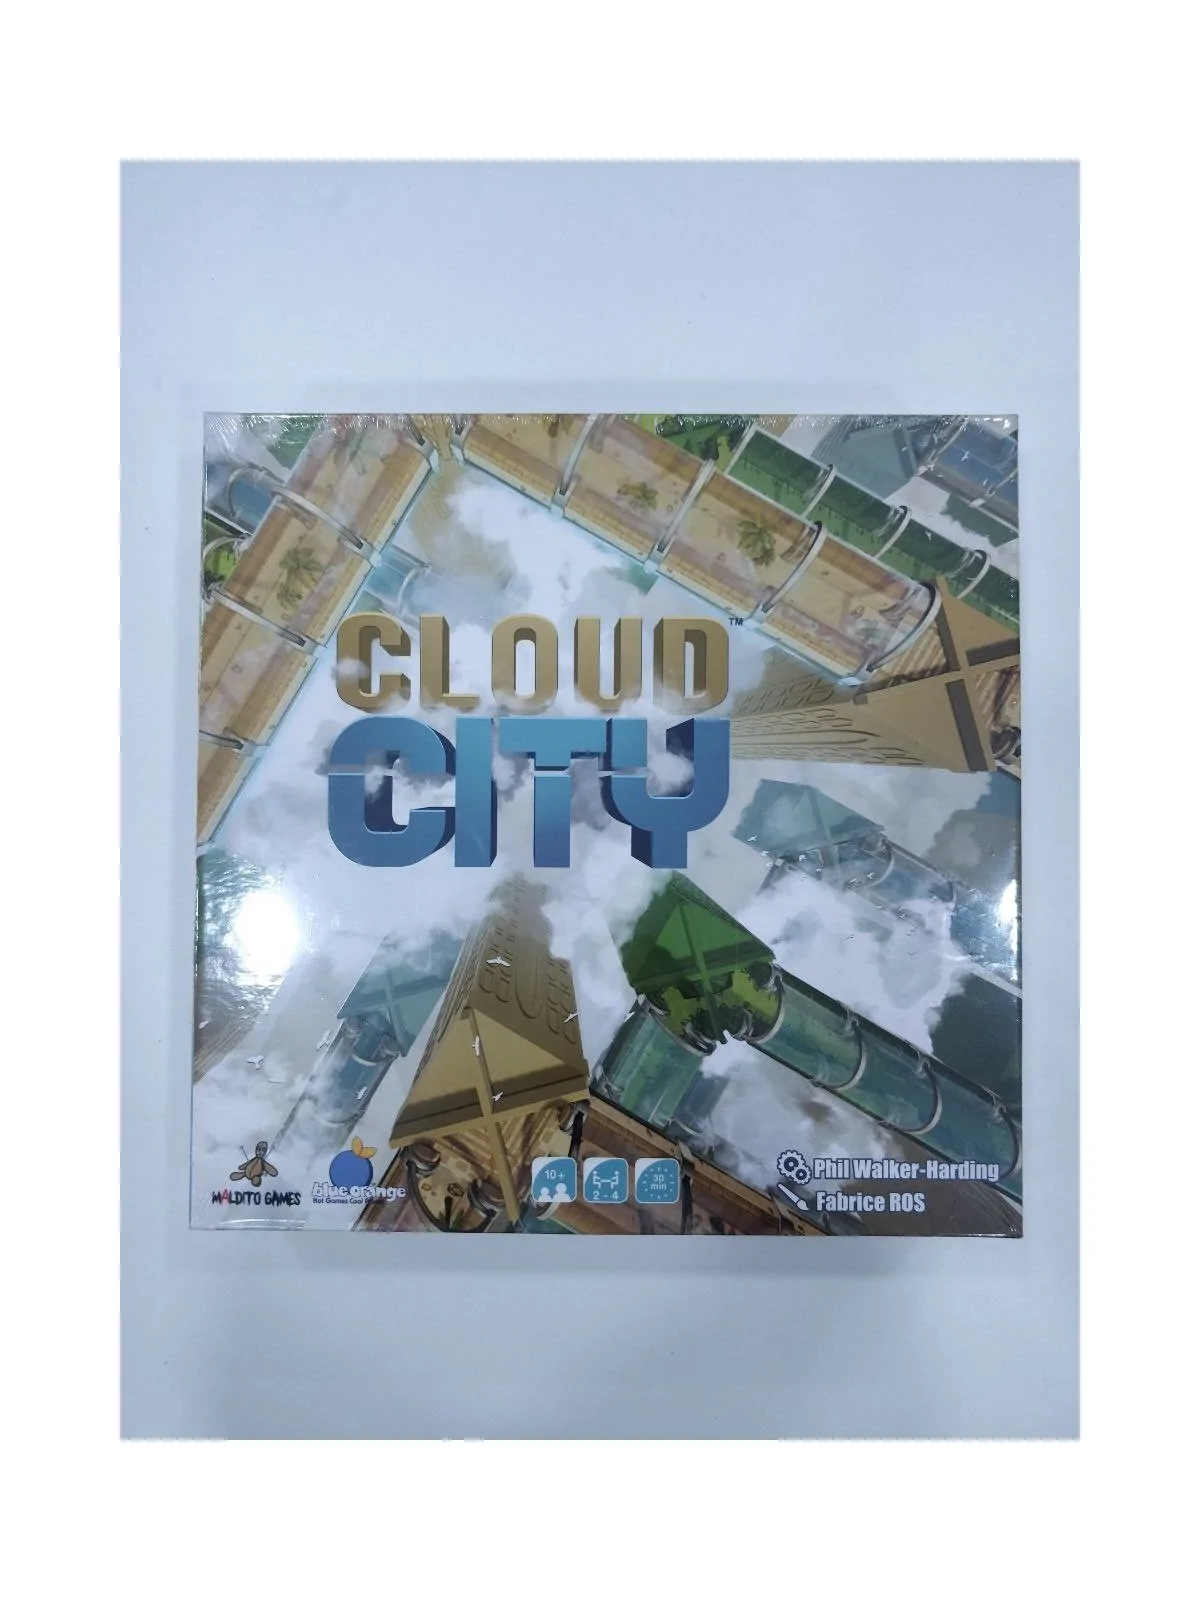 Comprar Cloud City [SEGUNDA MANO] barato al mejor precio 10,00 € de Ma